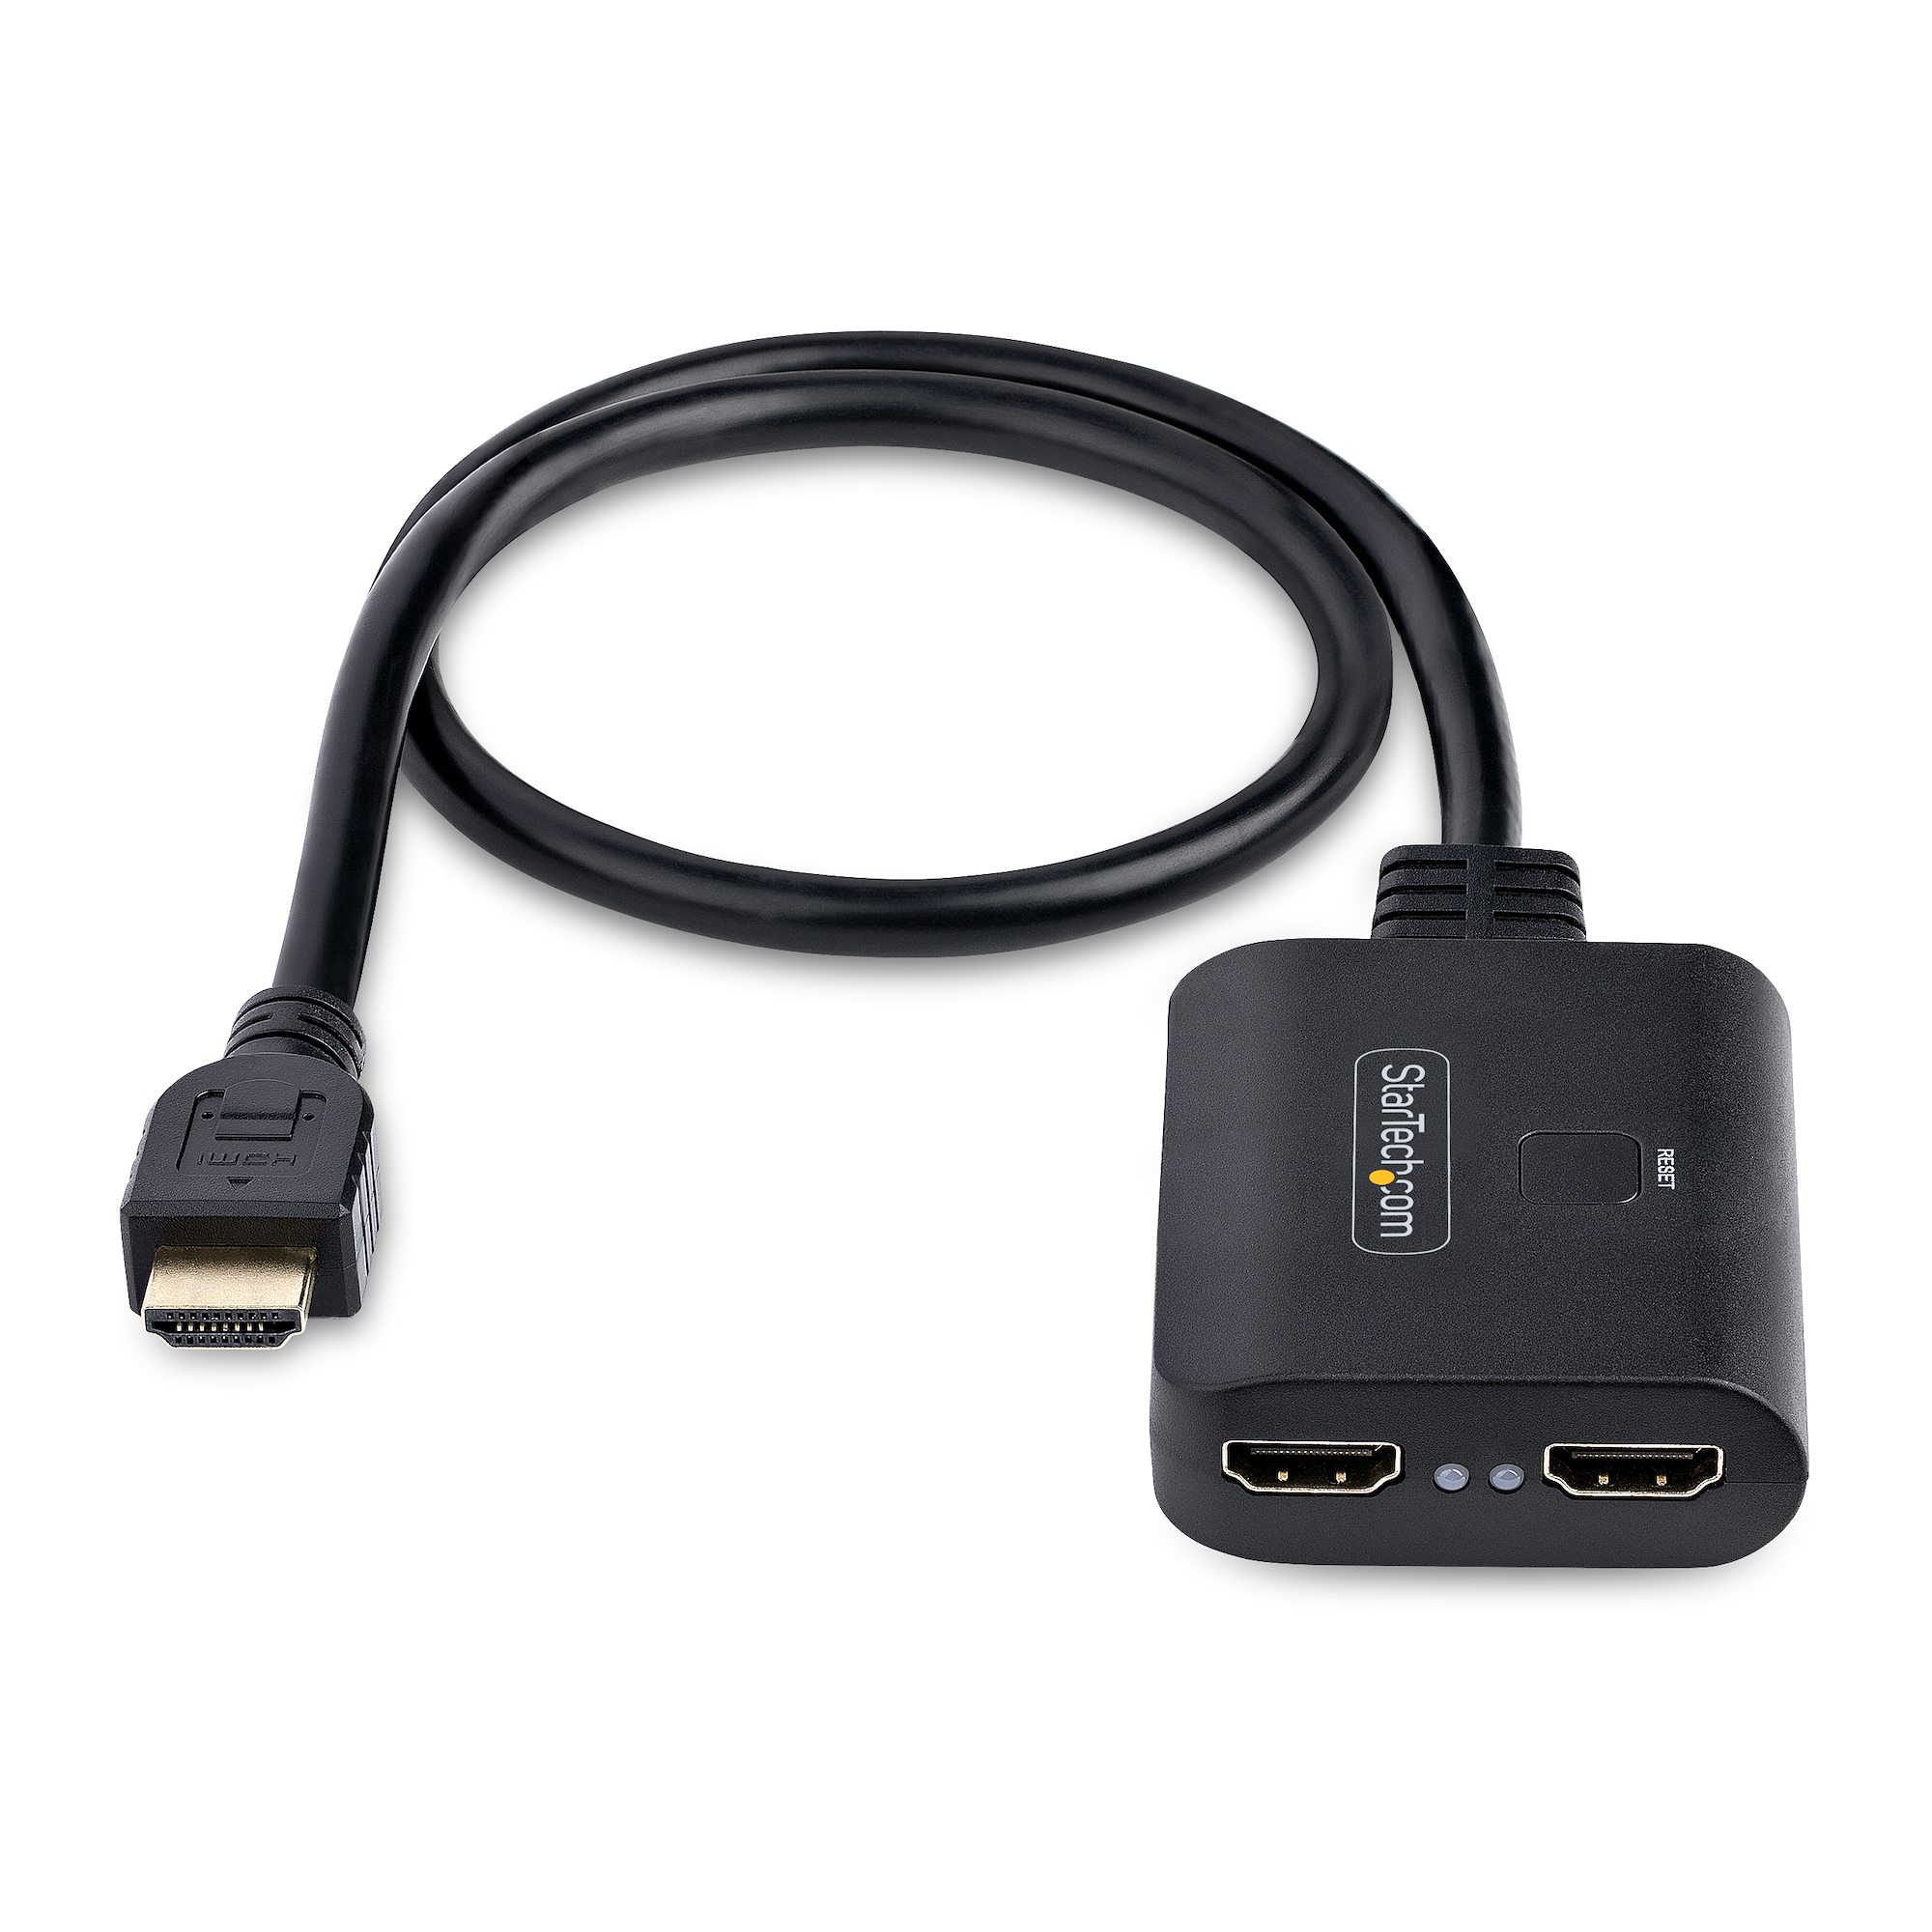 Splitter HDMI 2.0 4K 1x2 (1 entrée, 2 sorties) - Commutateur HDMI